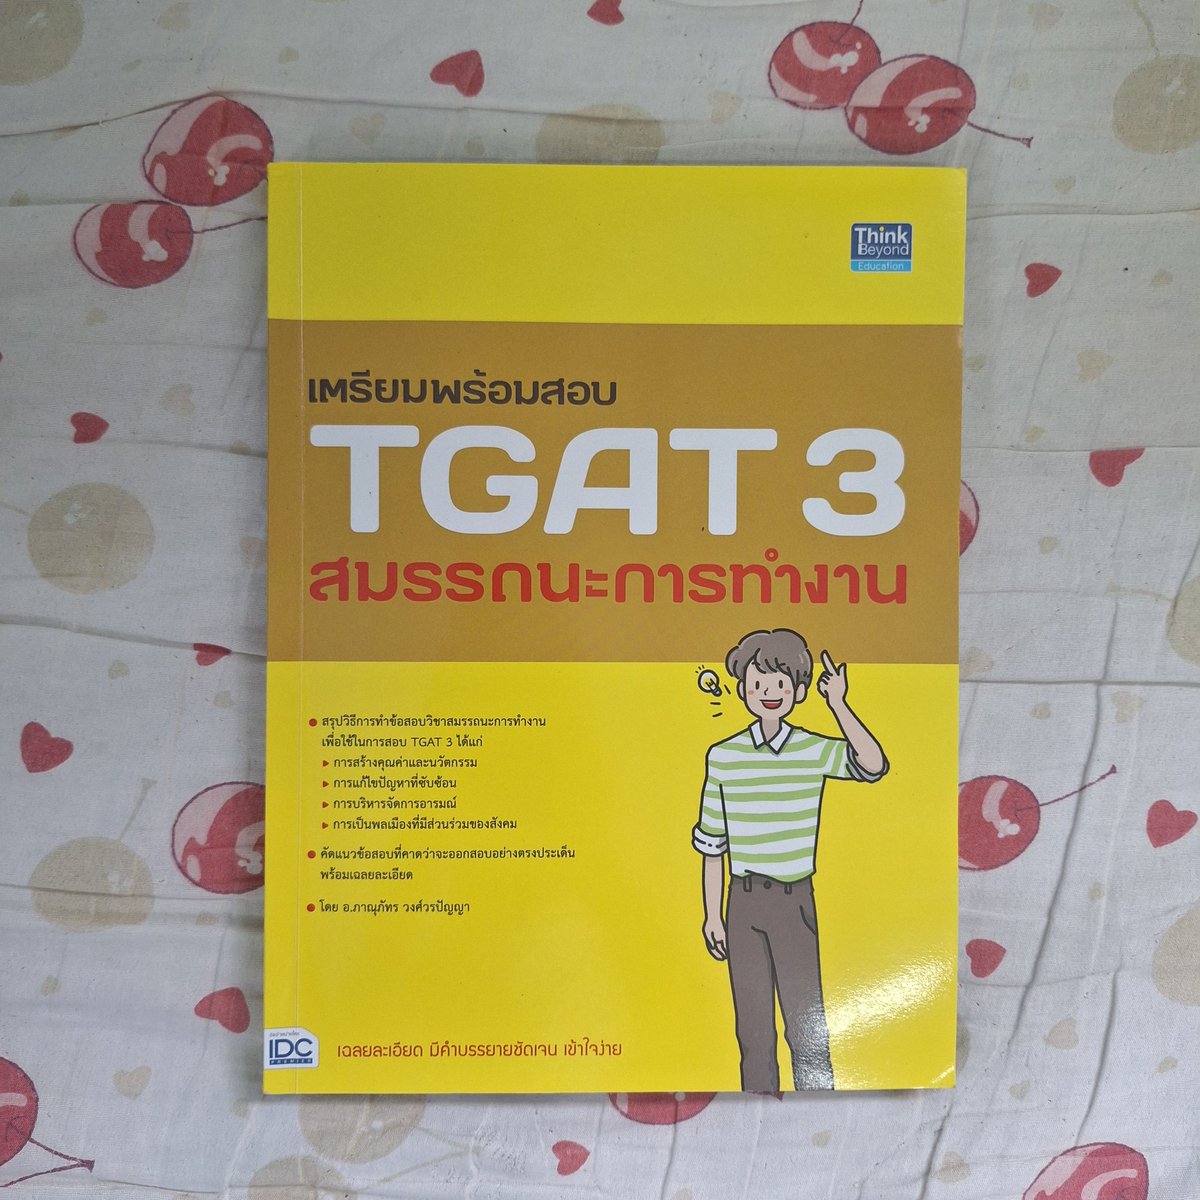 พร้อมส่ง🎀
หนังสือTGAT 1 2 3  มือสอง
Tgat1 200฿
Tgat2 200฿
Tgat3 150฿ (มีรอยลบดินสอ)
📮ค่าส่ง40฿
สนใจสามารถDM/เมนชั่นมาได้นะคะ
#ขายหนังสือ #หนังสือมือสอง #หนังสือเตรียมสอบมือสอง #หนังสือมือสองราคาถูก #หนังสือเตรียมสอบมือสอง #ขายหนังสือมือสอง #dek68 #dek69 #TCAS68 #TGATENG